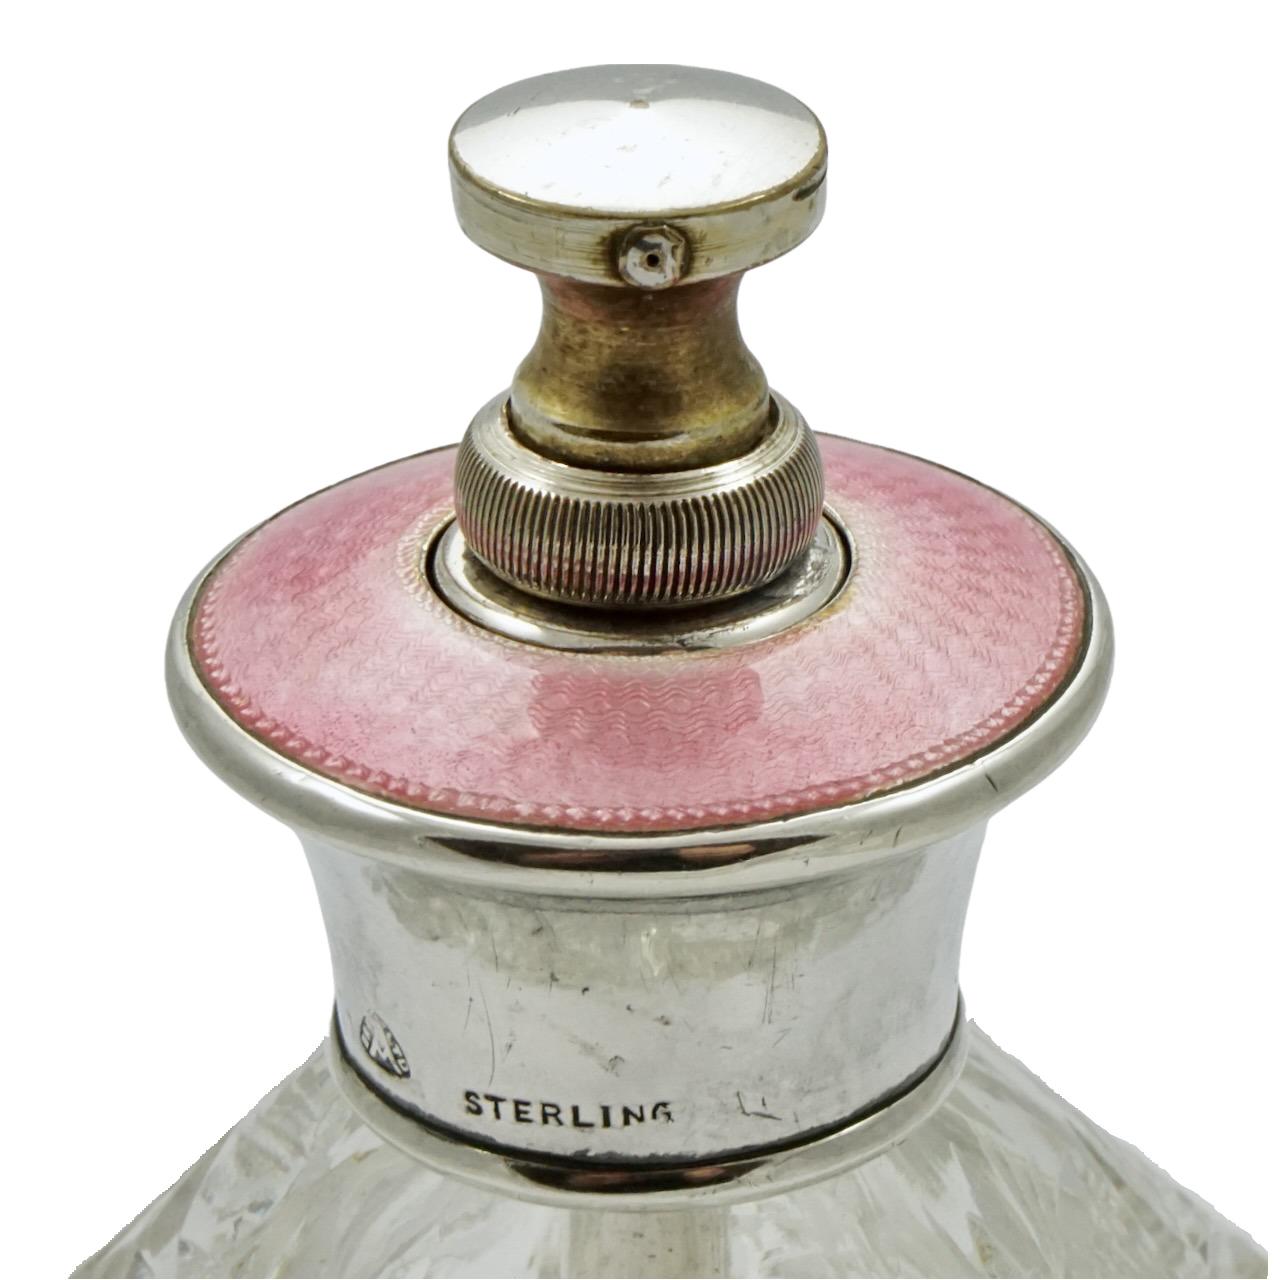 
Schöner Parfümflakon aus geschliffenem Glas in klassischem Design mit einem Deckel aus Sterlingsilber, der mit rosafarbener Guilloche-Emaille verziert ist. Der Sprüher ist bei Nichtgebrauch abschraubbar. Höhe 9 cm / 3,5 Zoll und Durchmesser 7 cm /